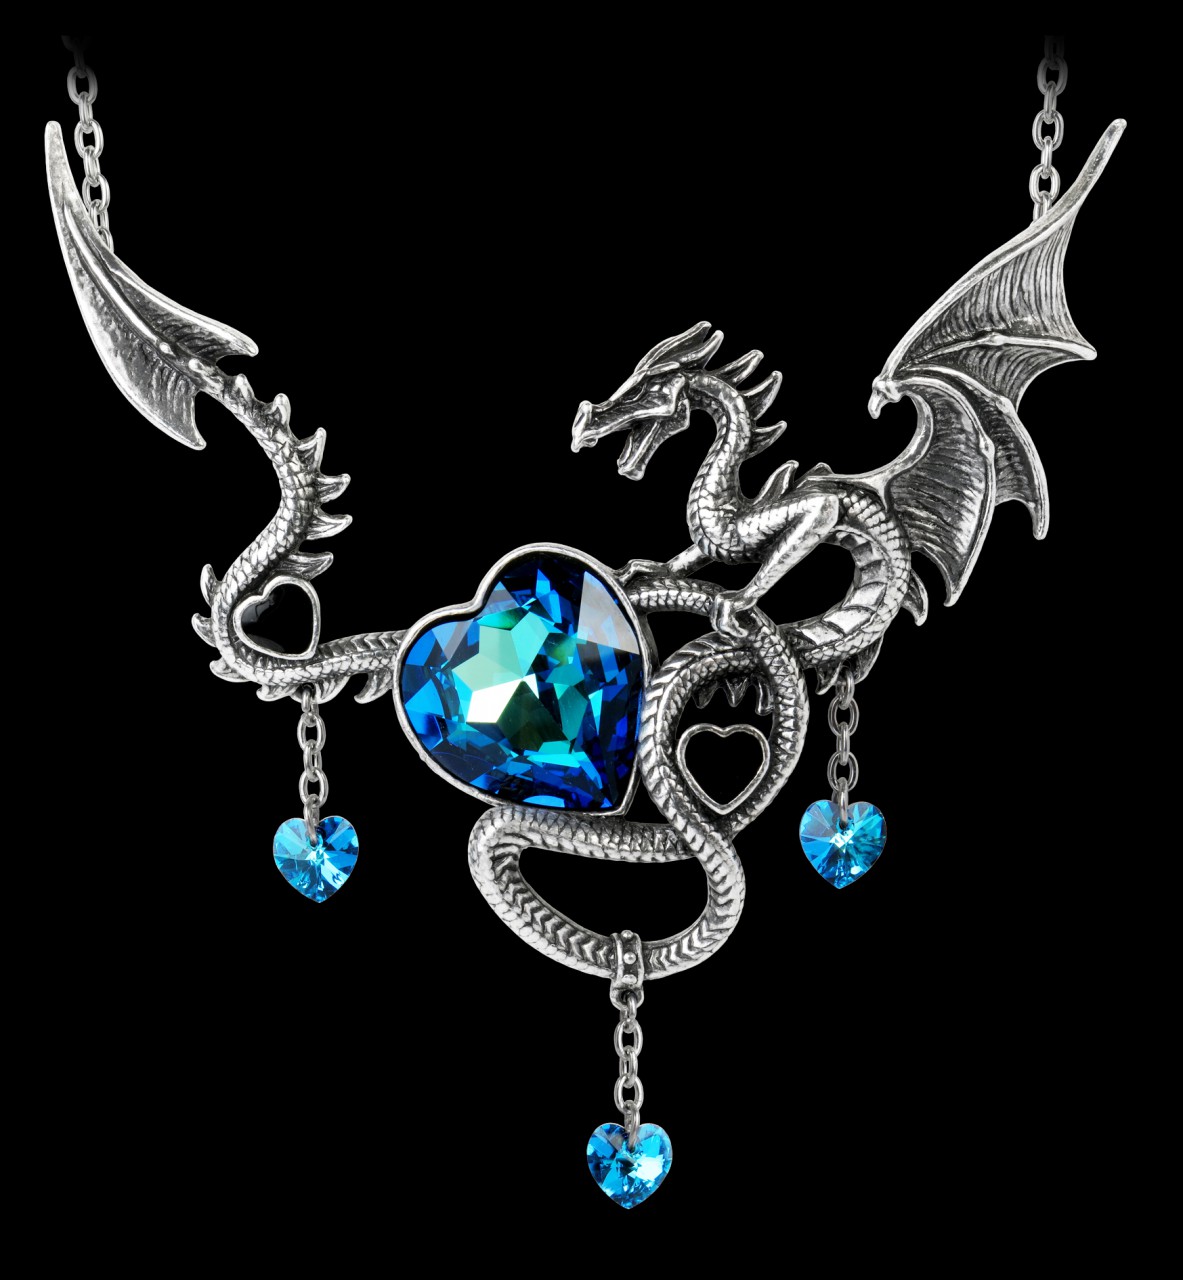 Alchemy Dragon Heart Necklace - Draig O Gariad